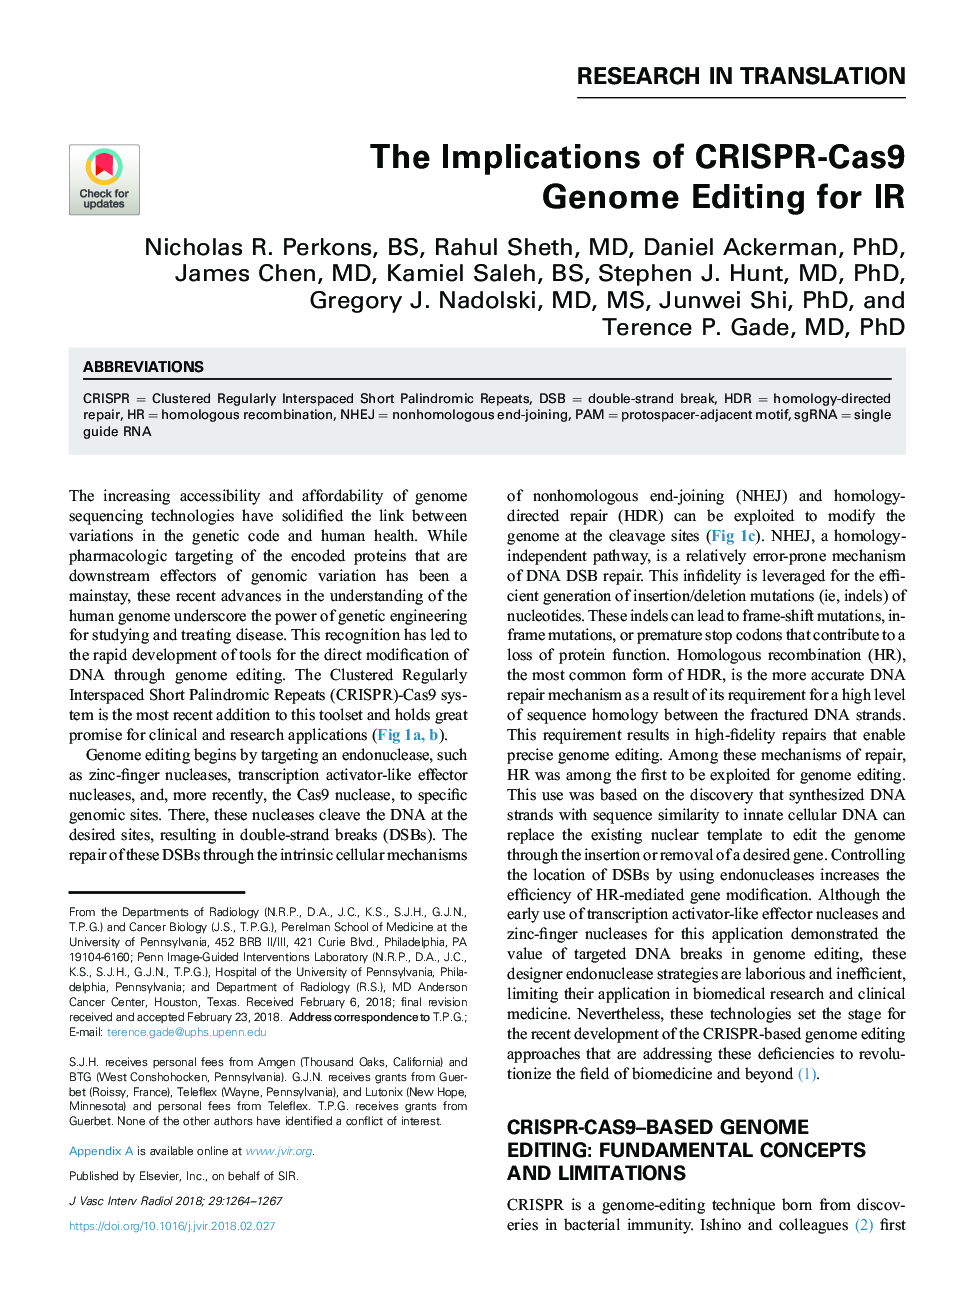 The Implications of CRISPR-Cas9 Genome Editing for IR